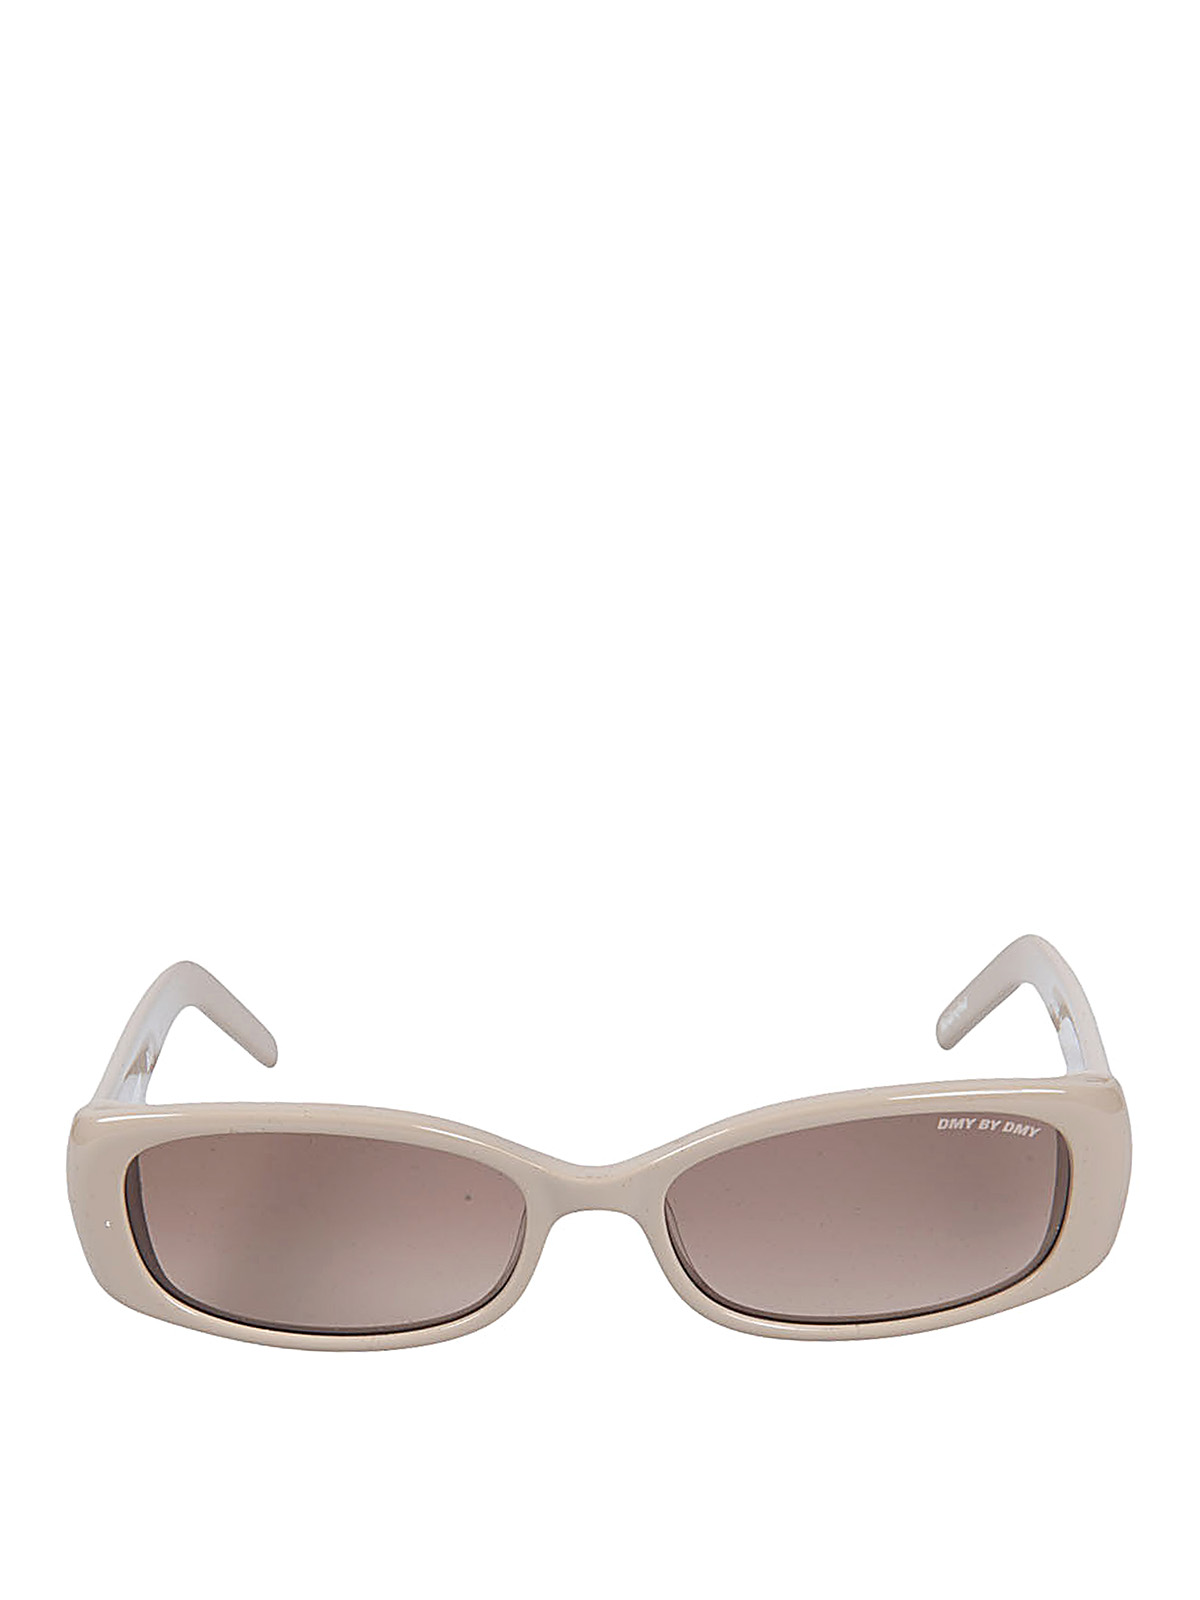 Shop Gradient Sunglasses Online | Max Bahrain-lmd.edu.vn